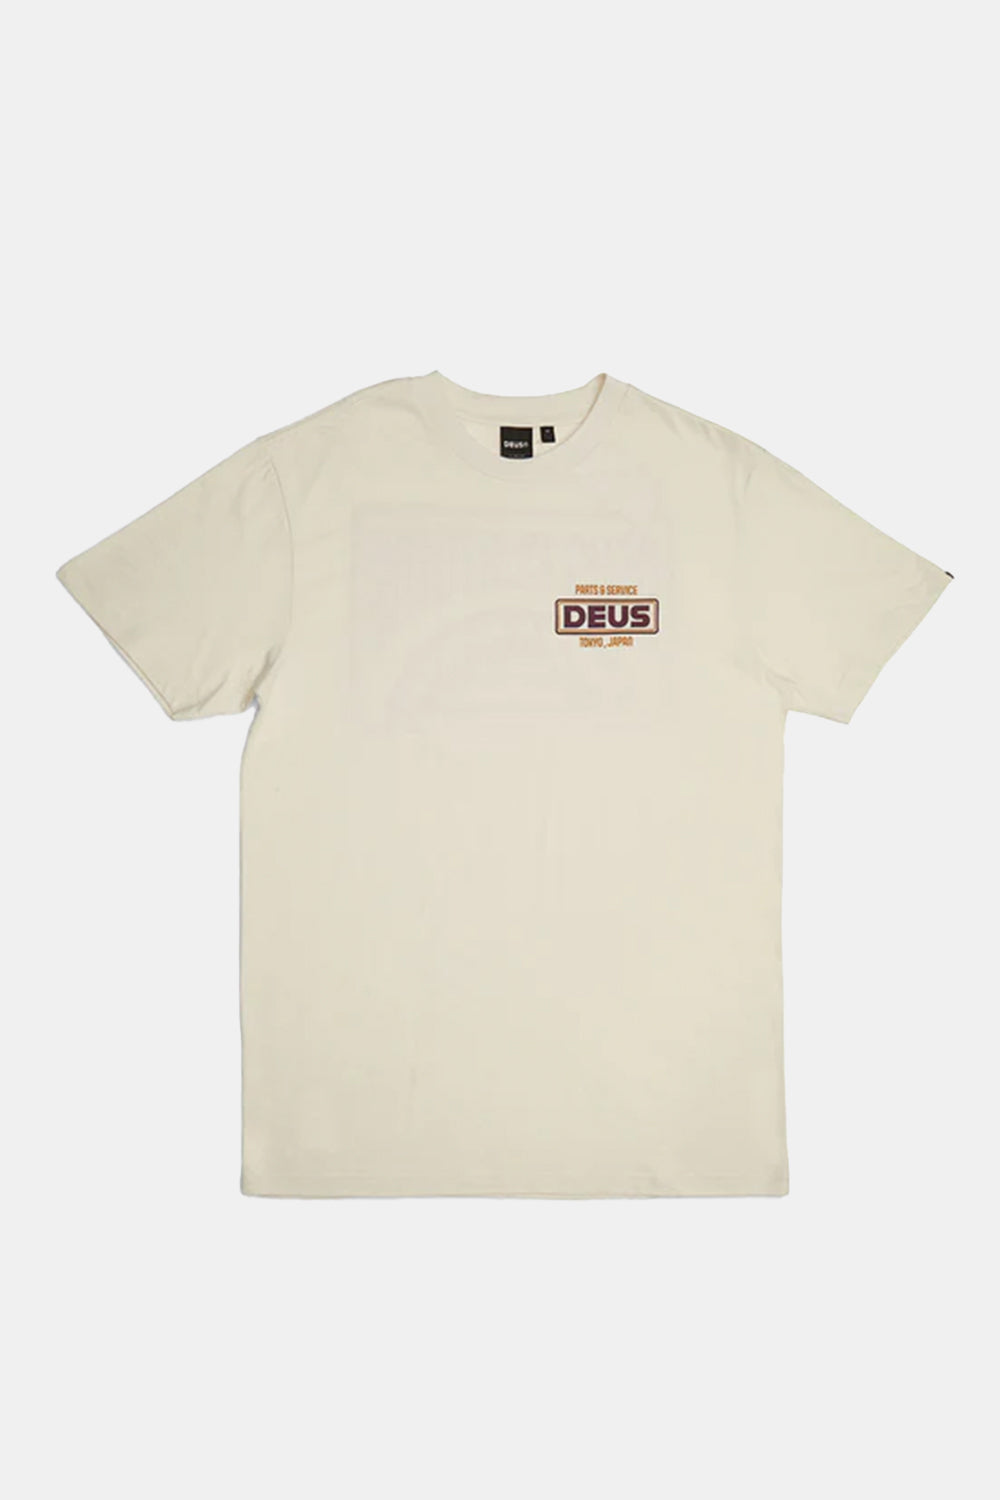 Deus Depot T-shirt i økologisk bomuld (vintage hvid)